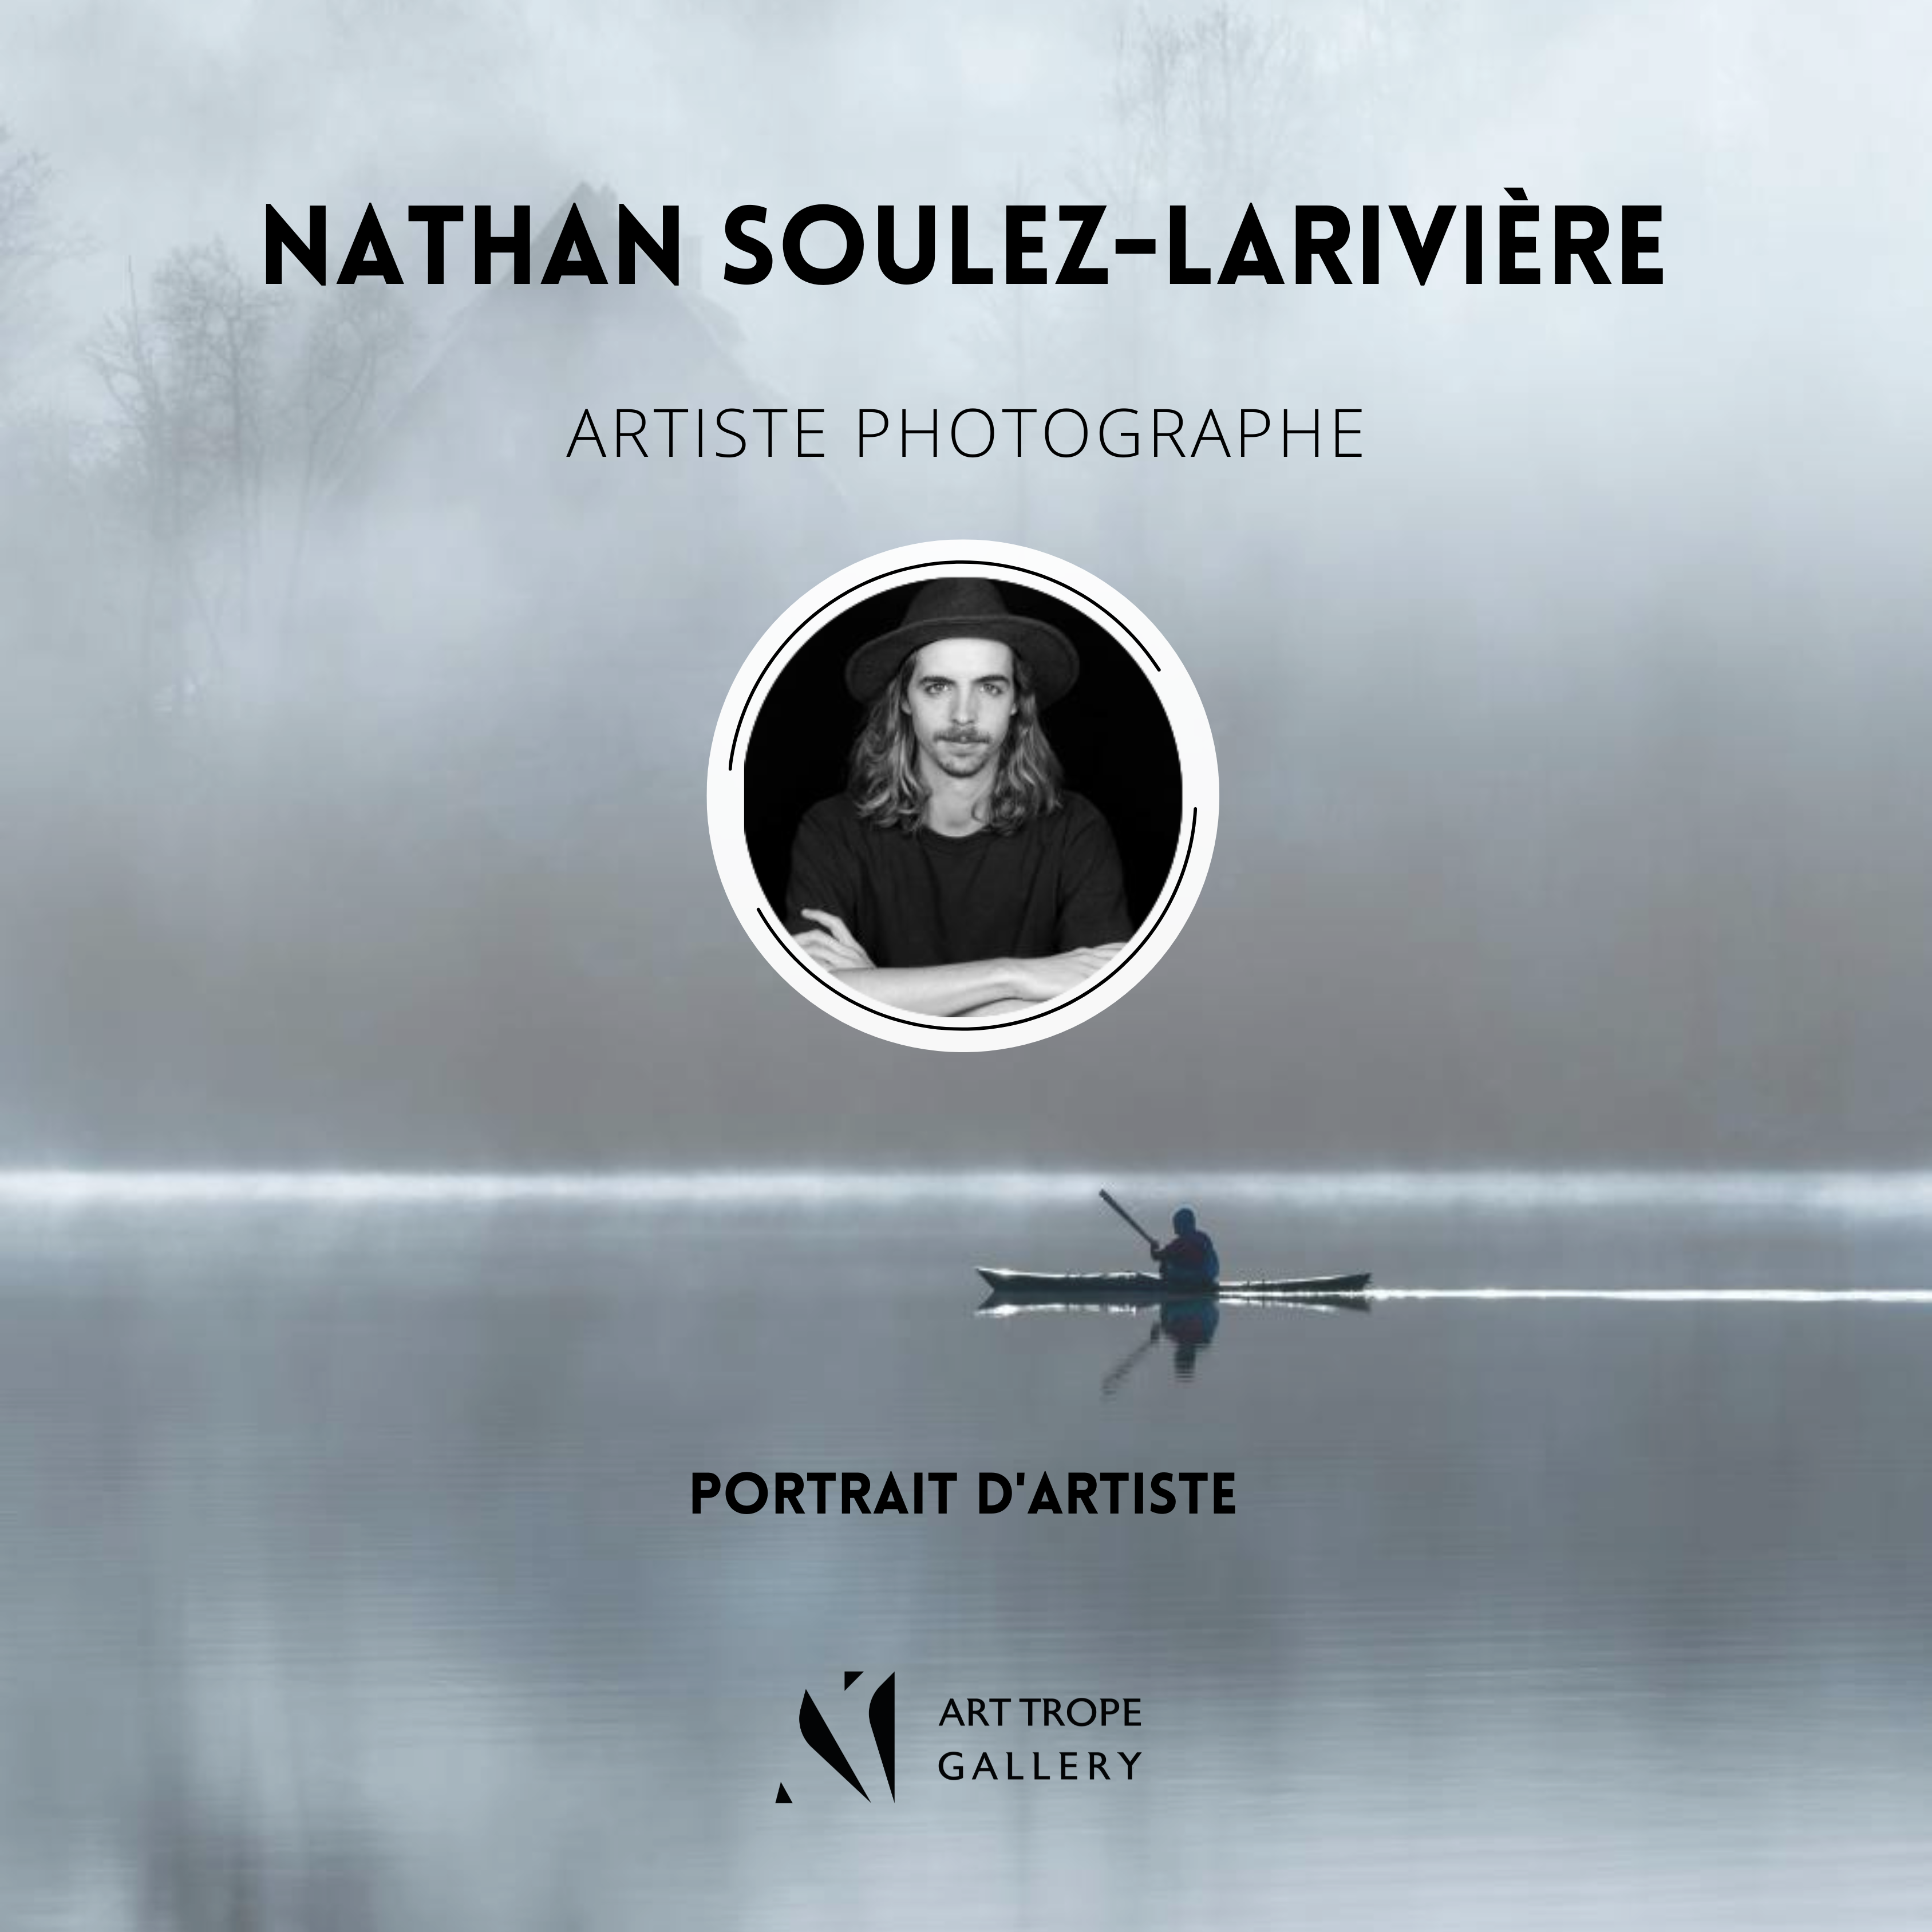 Art Trope Gallery vous présente le portrait du Photographe Nathan Soulez-Larivière !